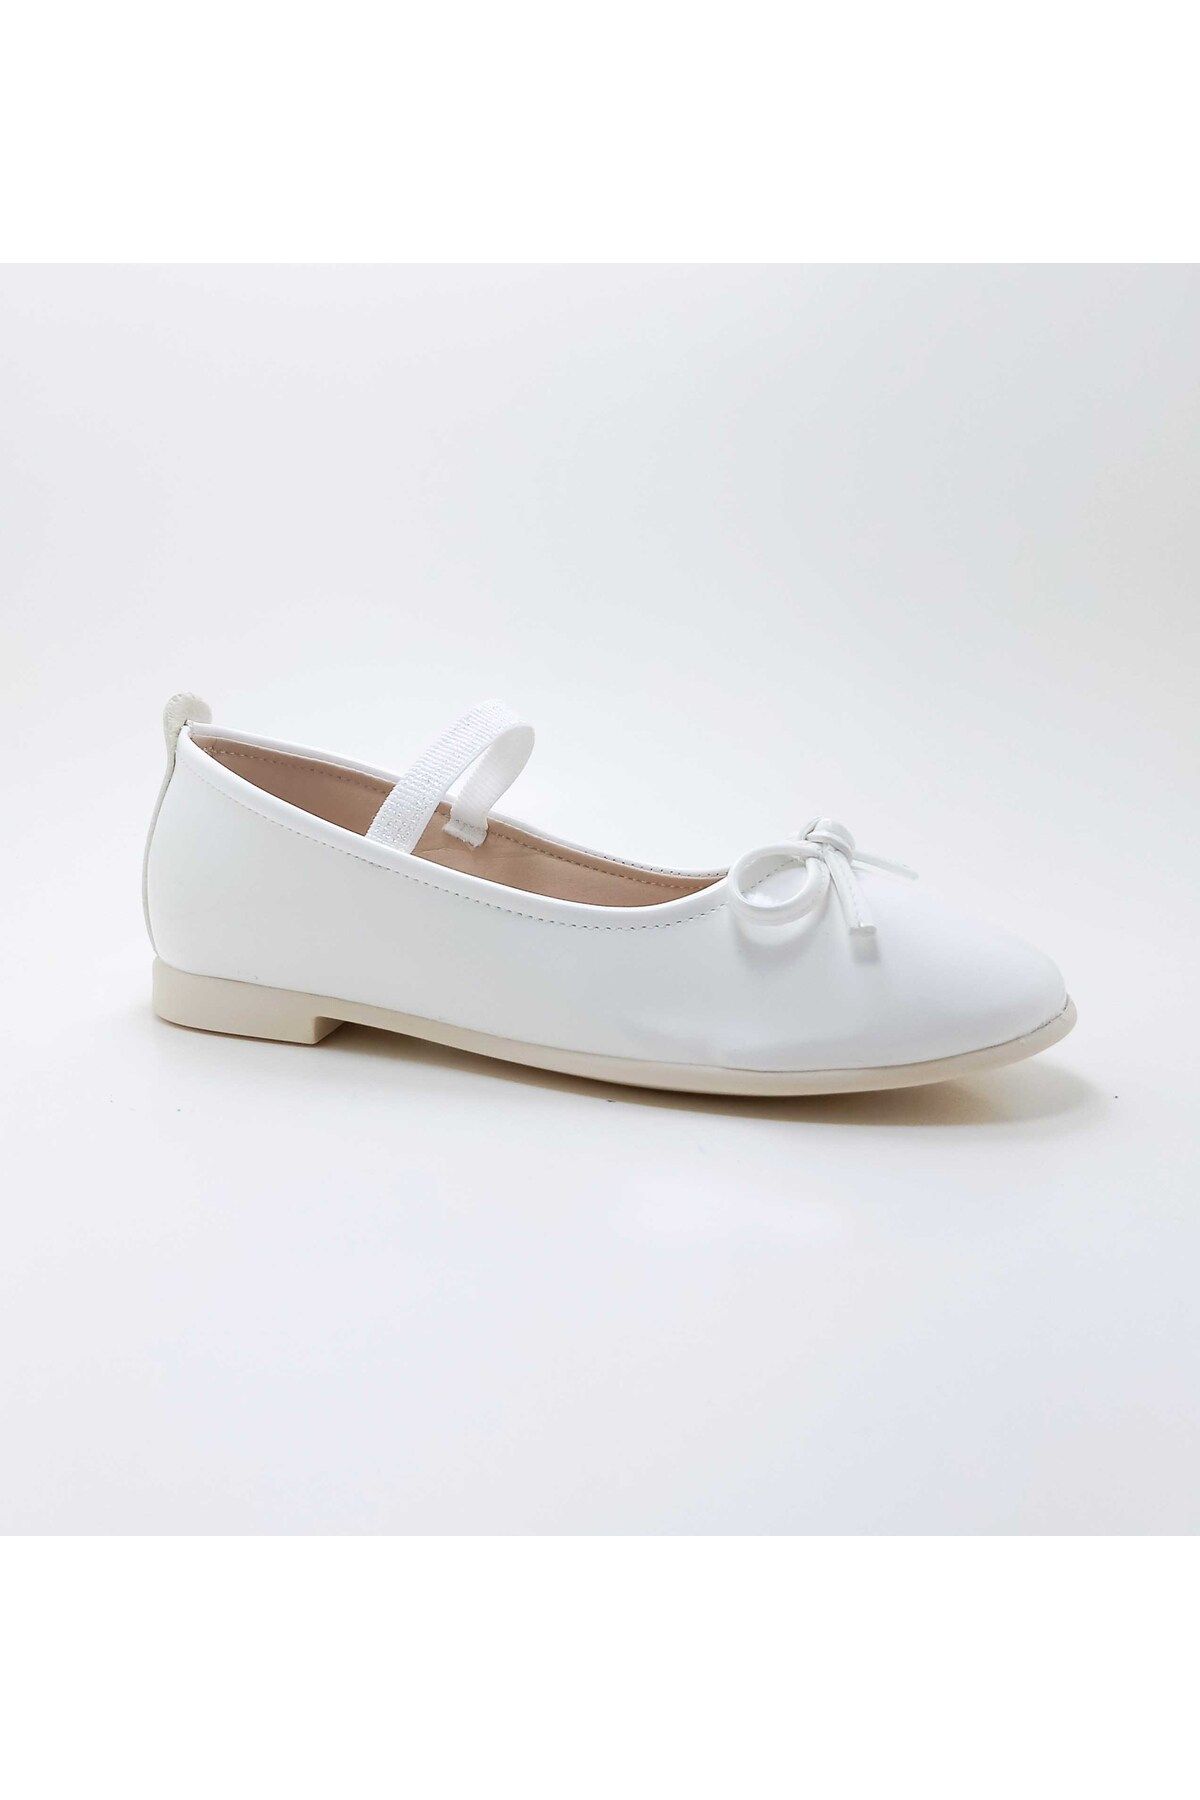 Elo Shoes Ello Shoes Kız Çocuk Beyaz Lastikli Fiyonk Detaylı Babet